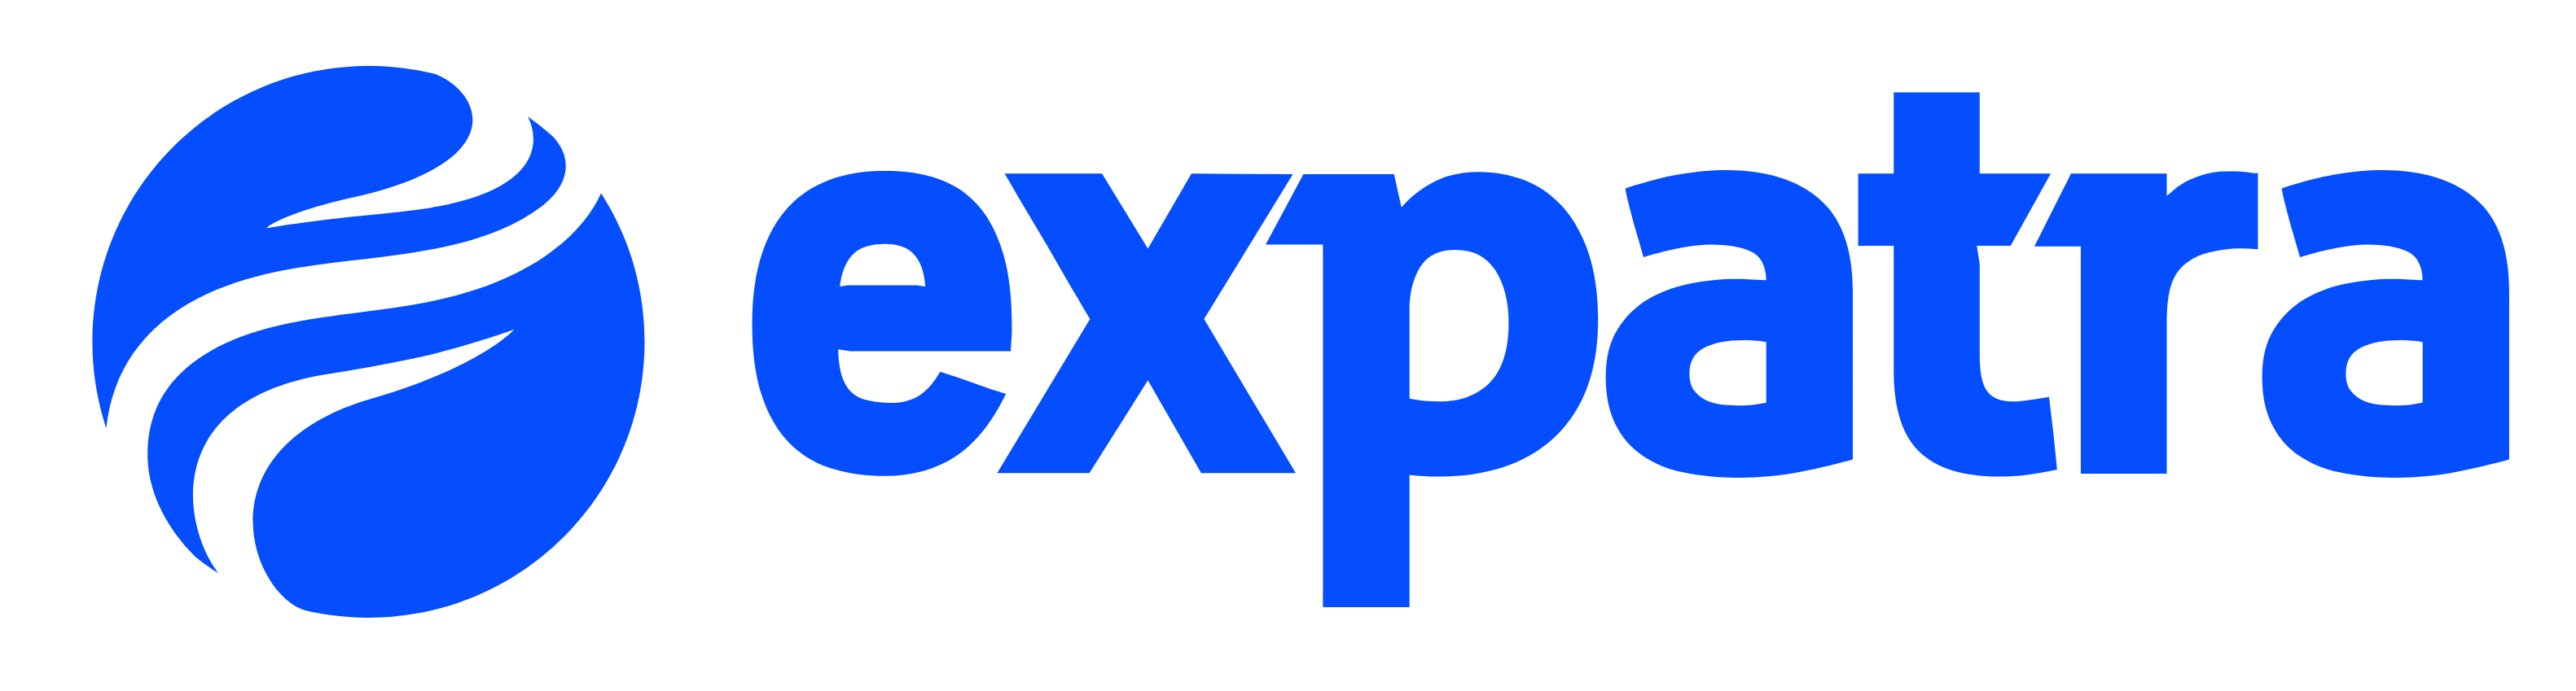 expatra-logo